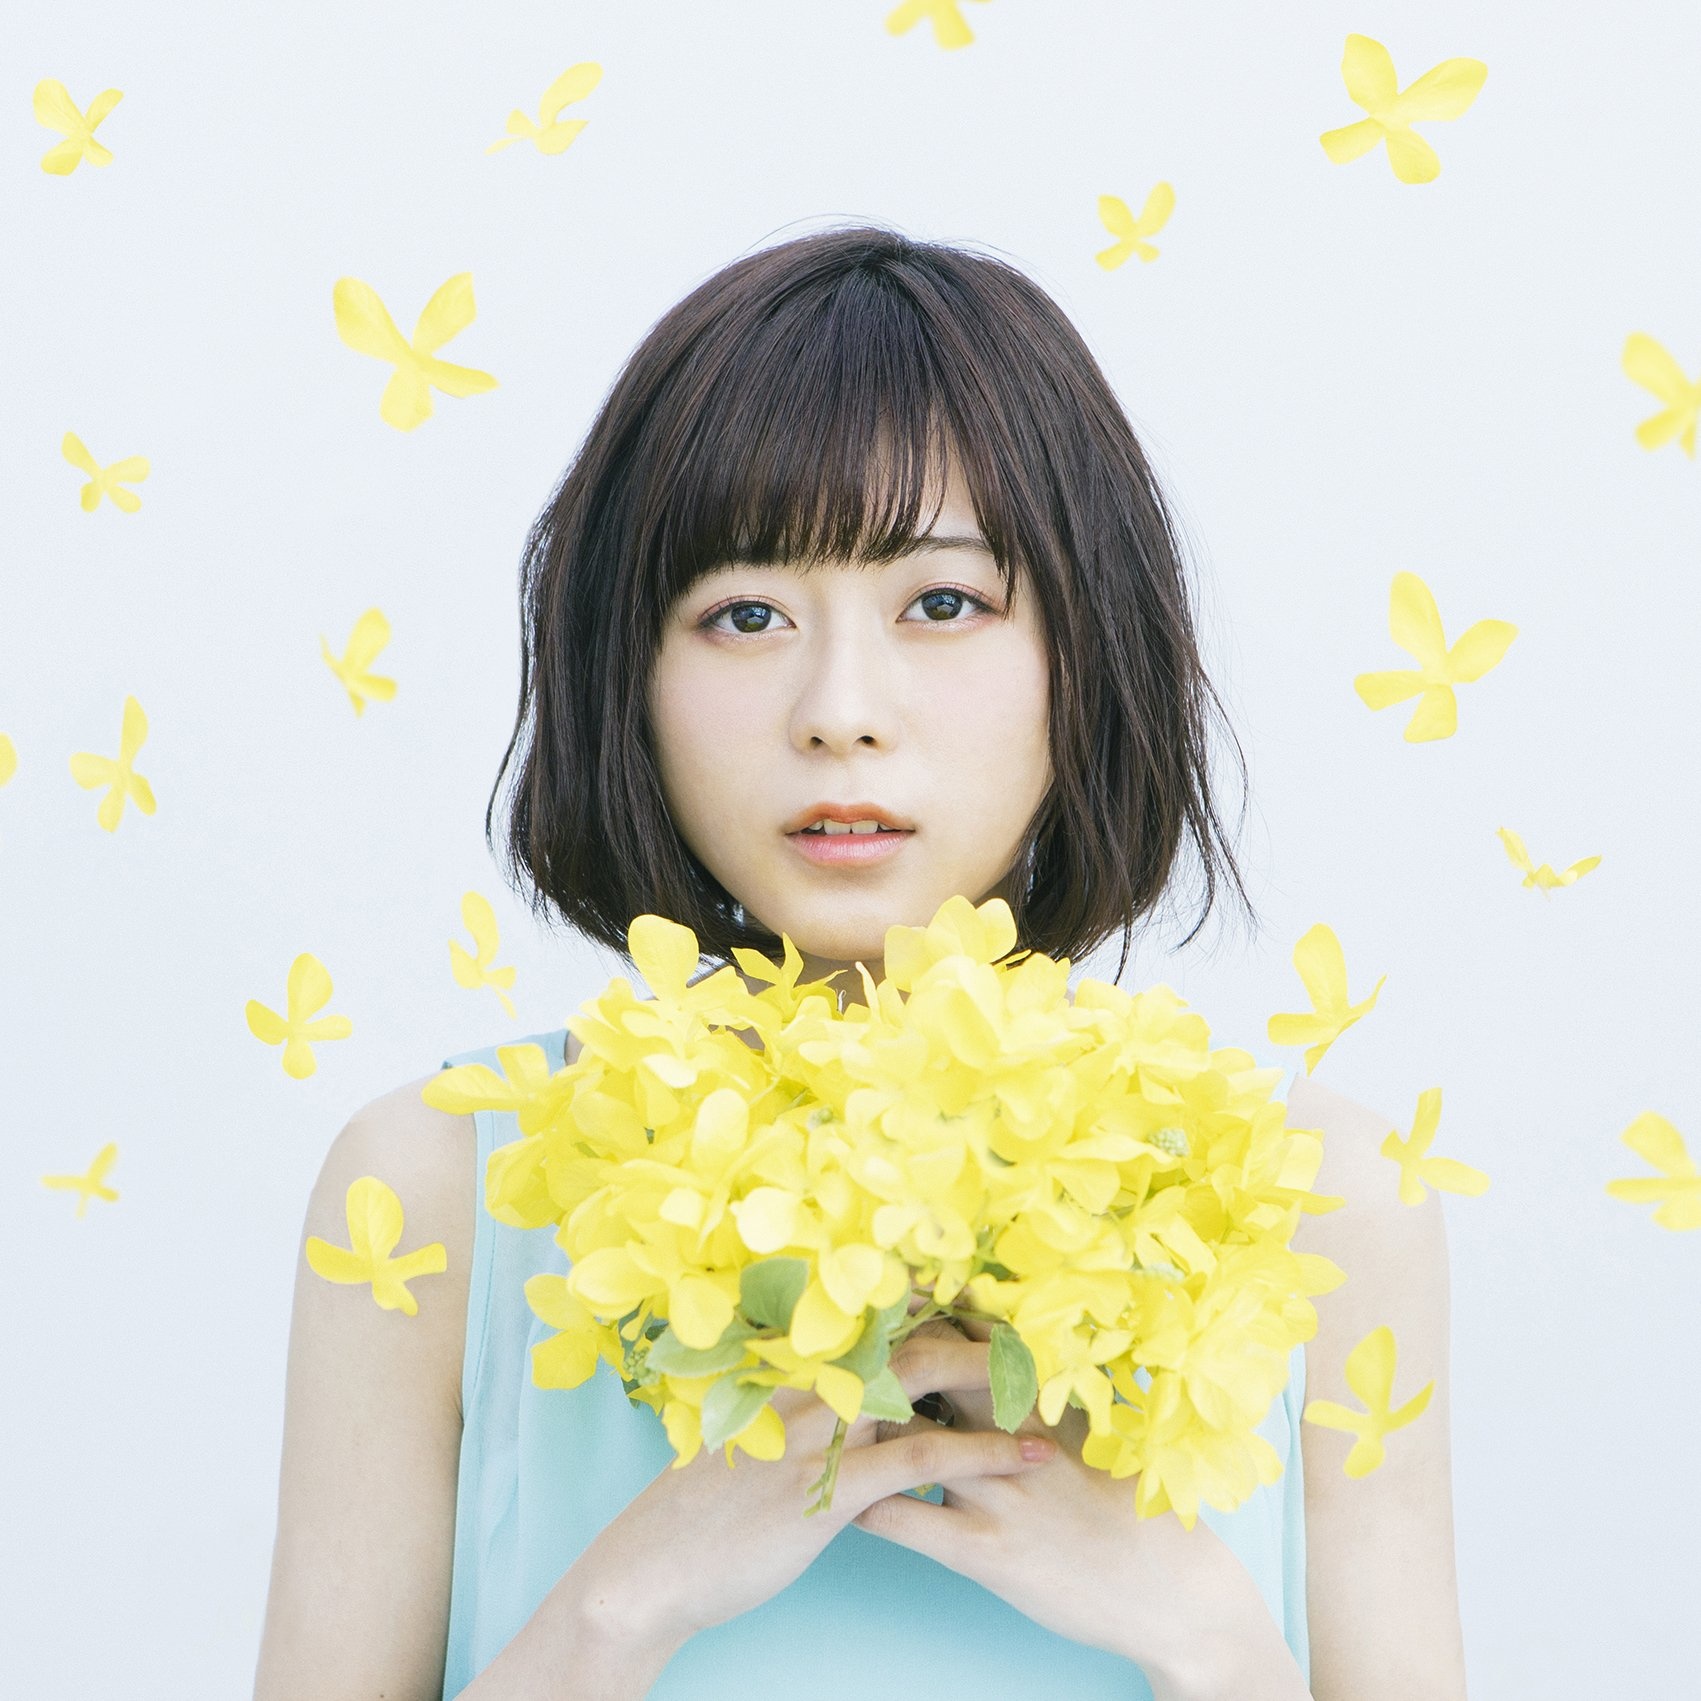 水瀨いのり1st ALBUM「Innocent flower」情報解禁 - 巴哈姆特